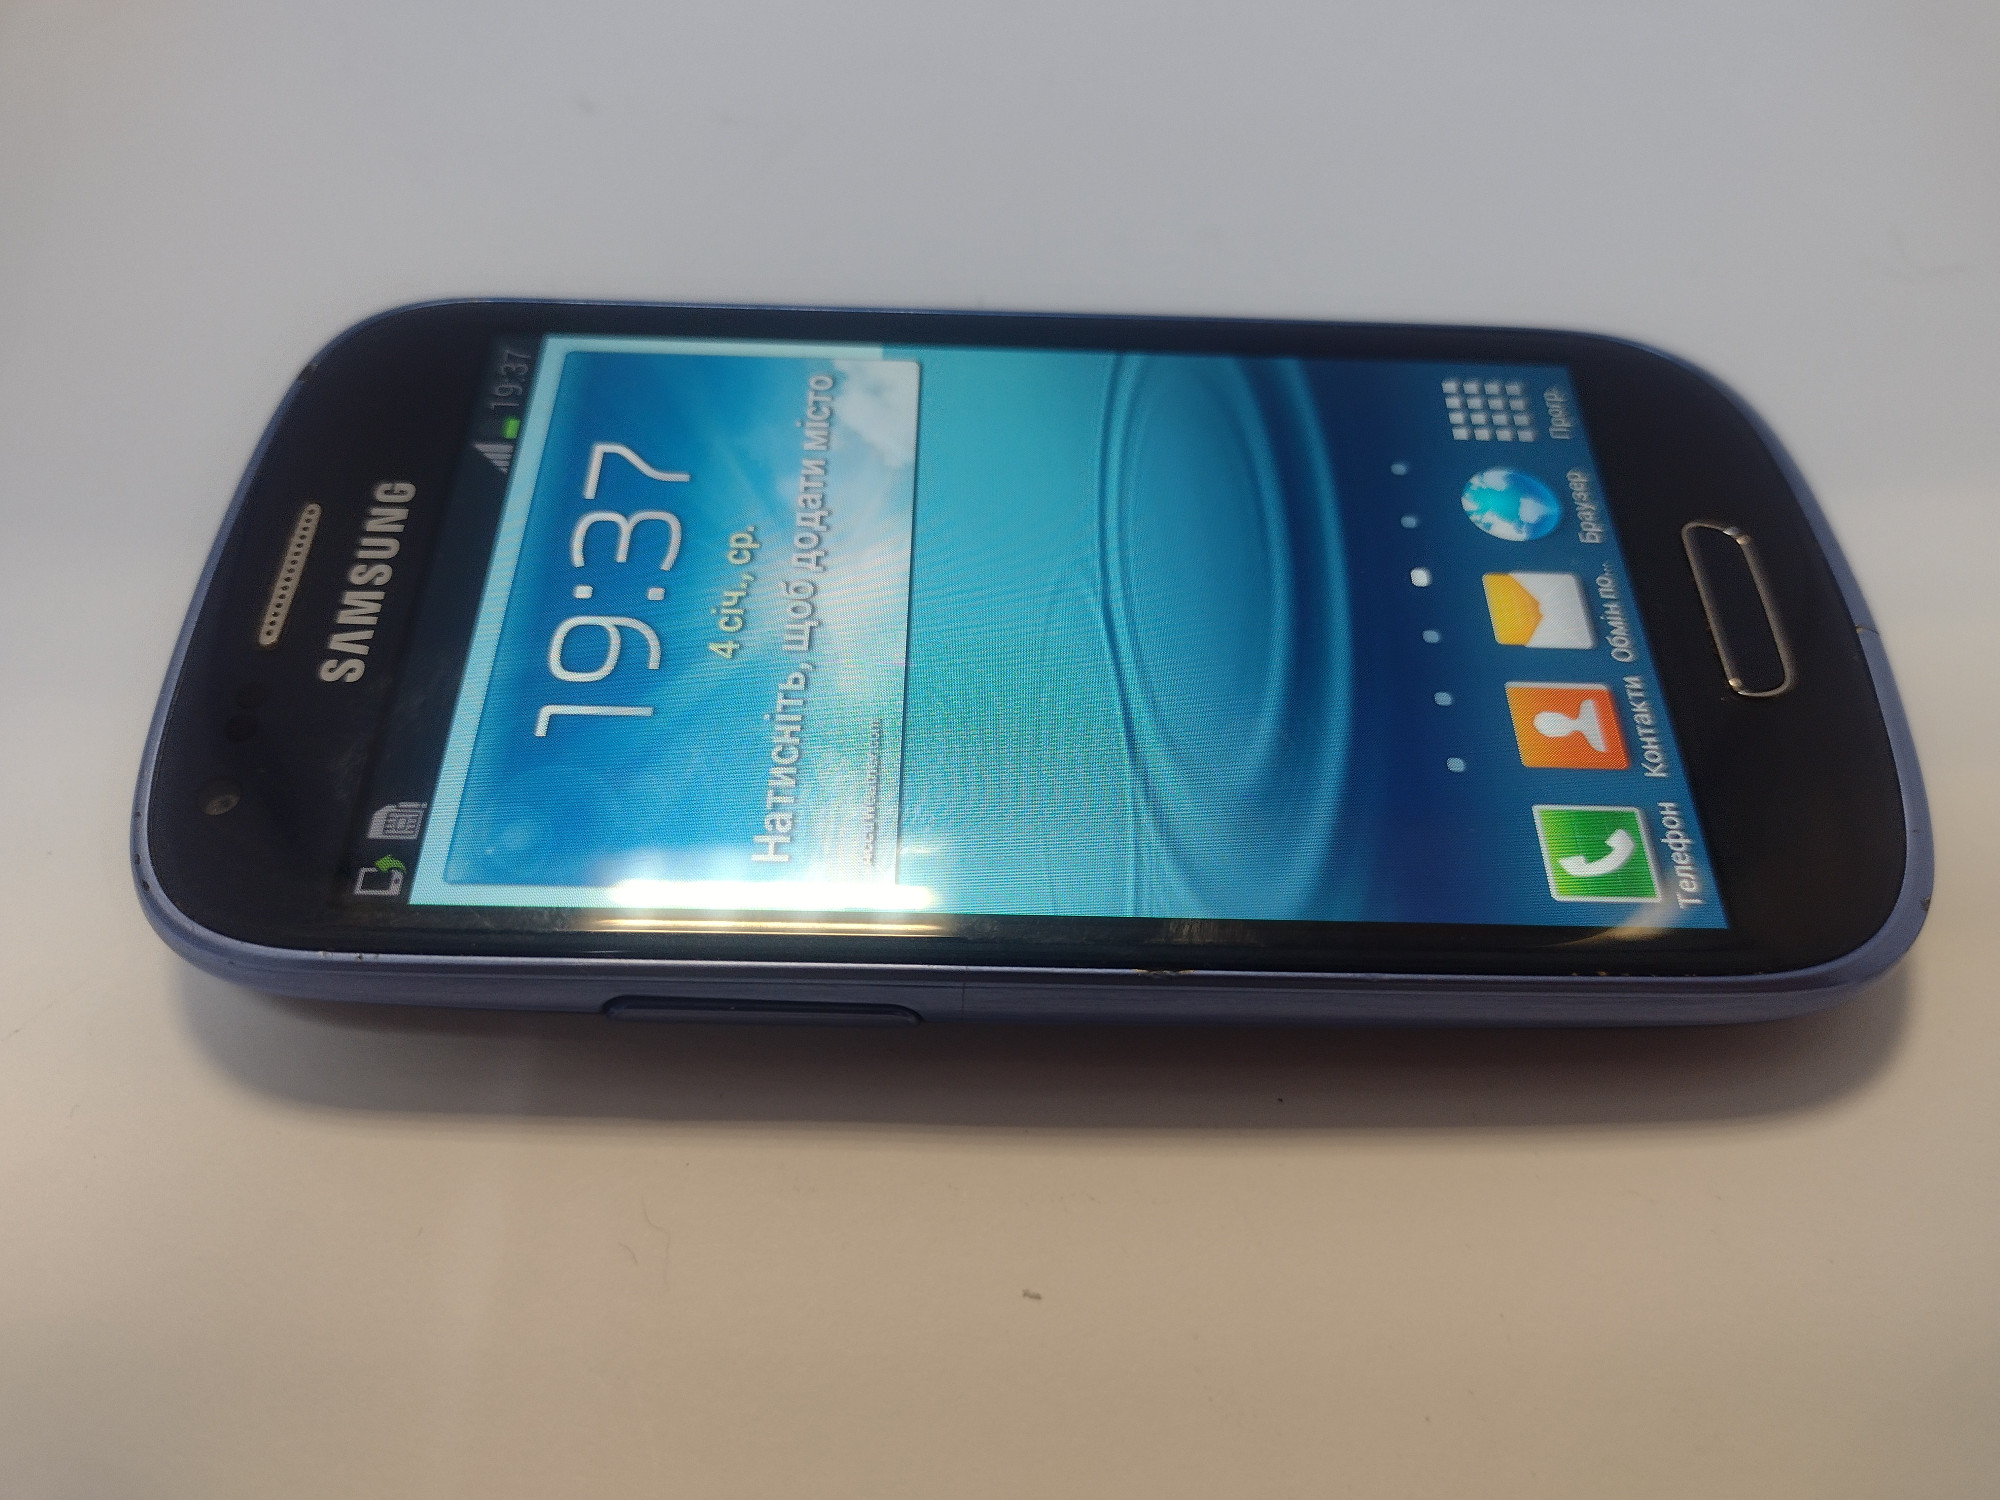 Samsung Galaxy S III mini (GT-I8190) 1/16Gb 3